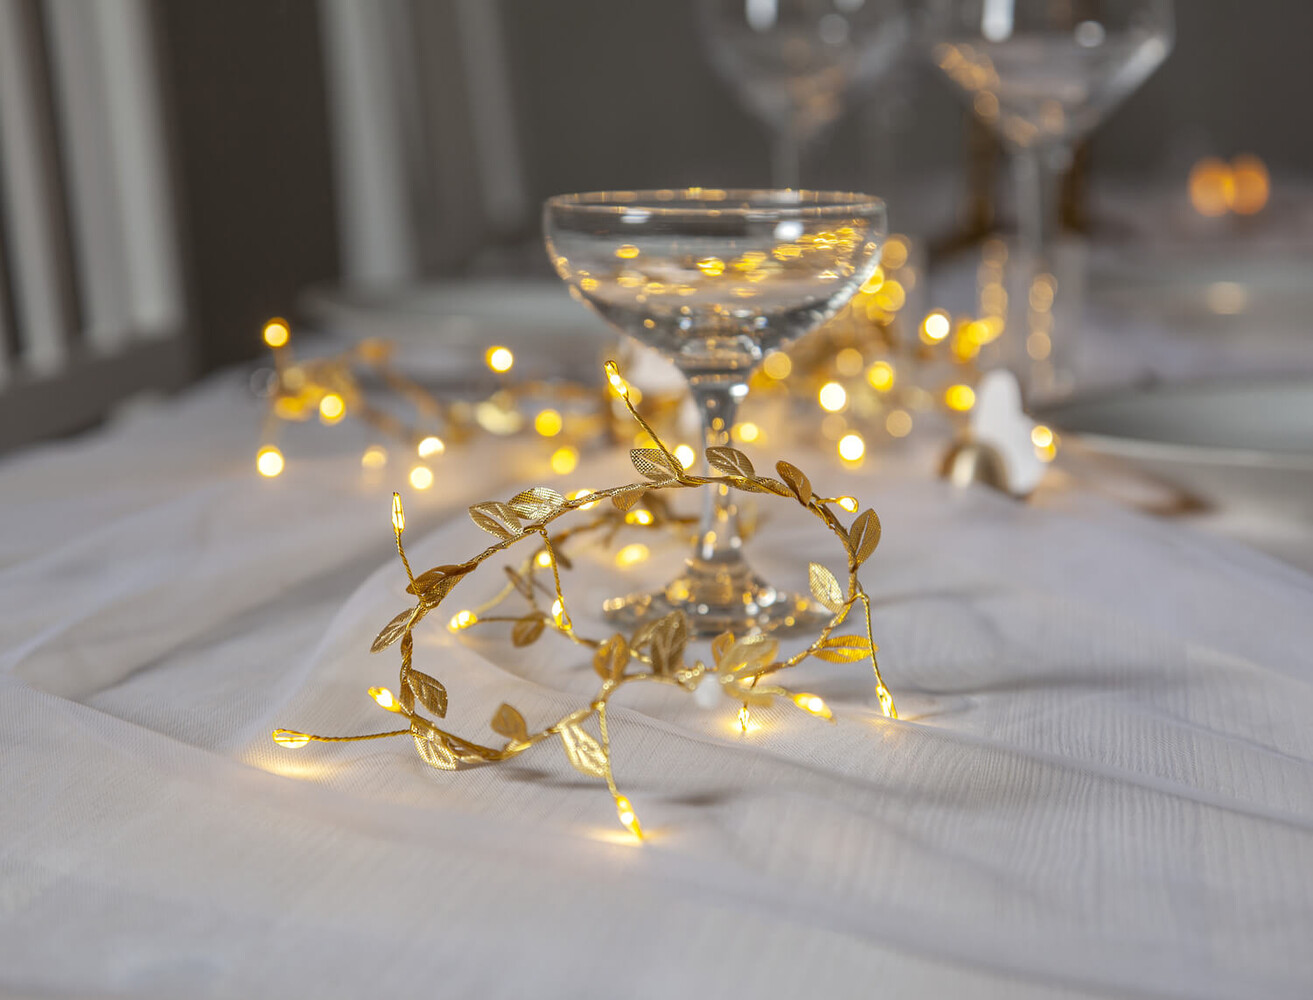 Wunderschöne Lichterkette von Star Trading, geschmückt mit goldenen Blättern und warmweißen LEDs